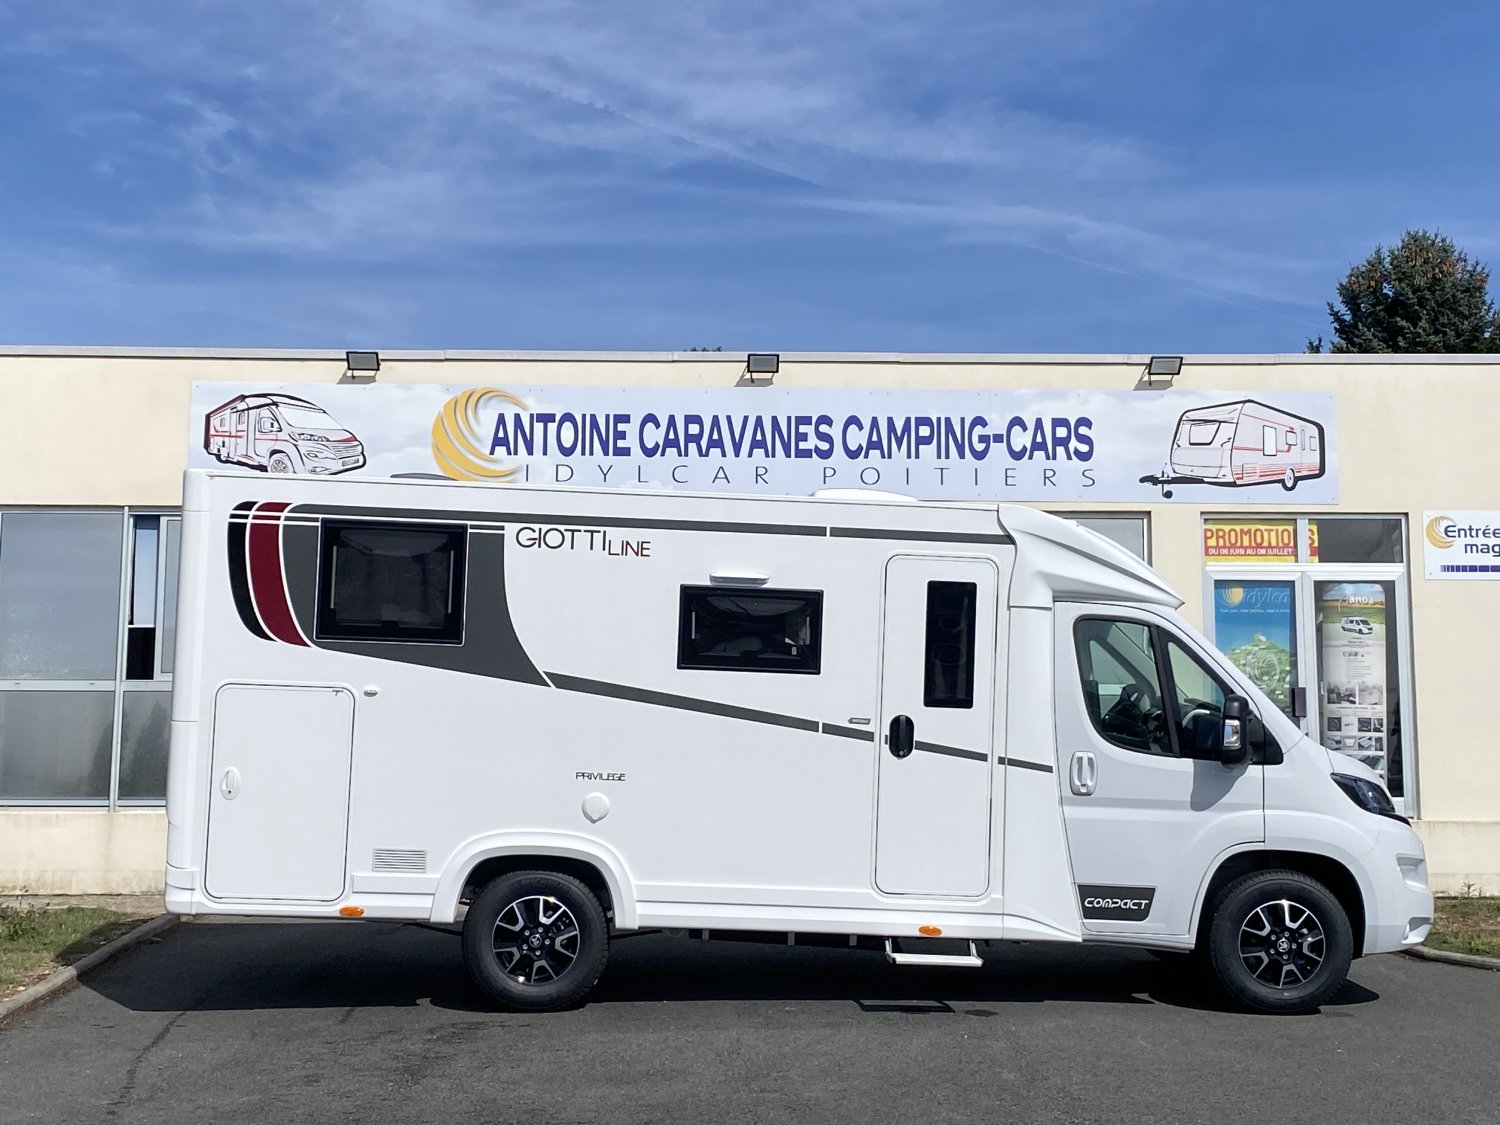 Champion Caravanes et Camping Car - Giottiline Compact c 66 à 67 096€